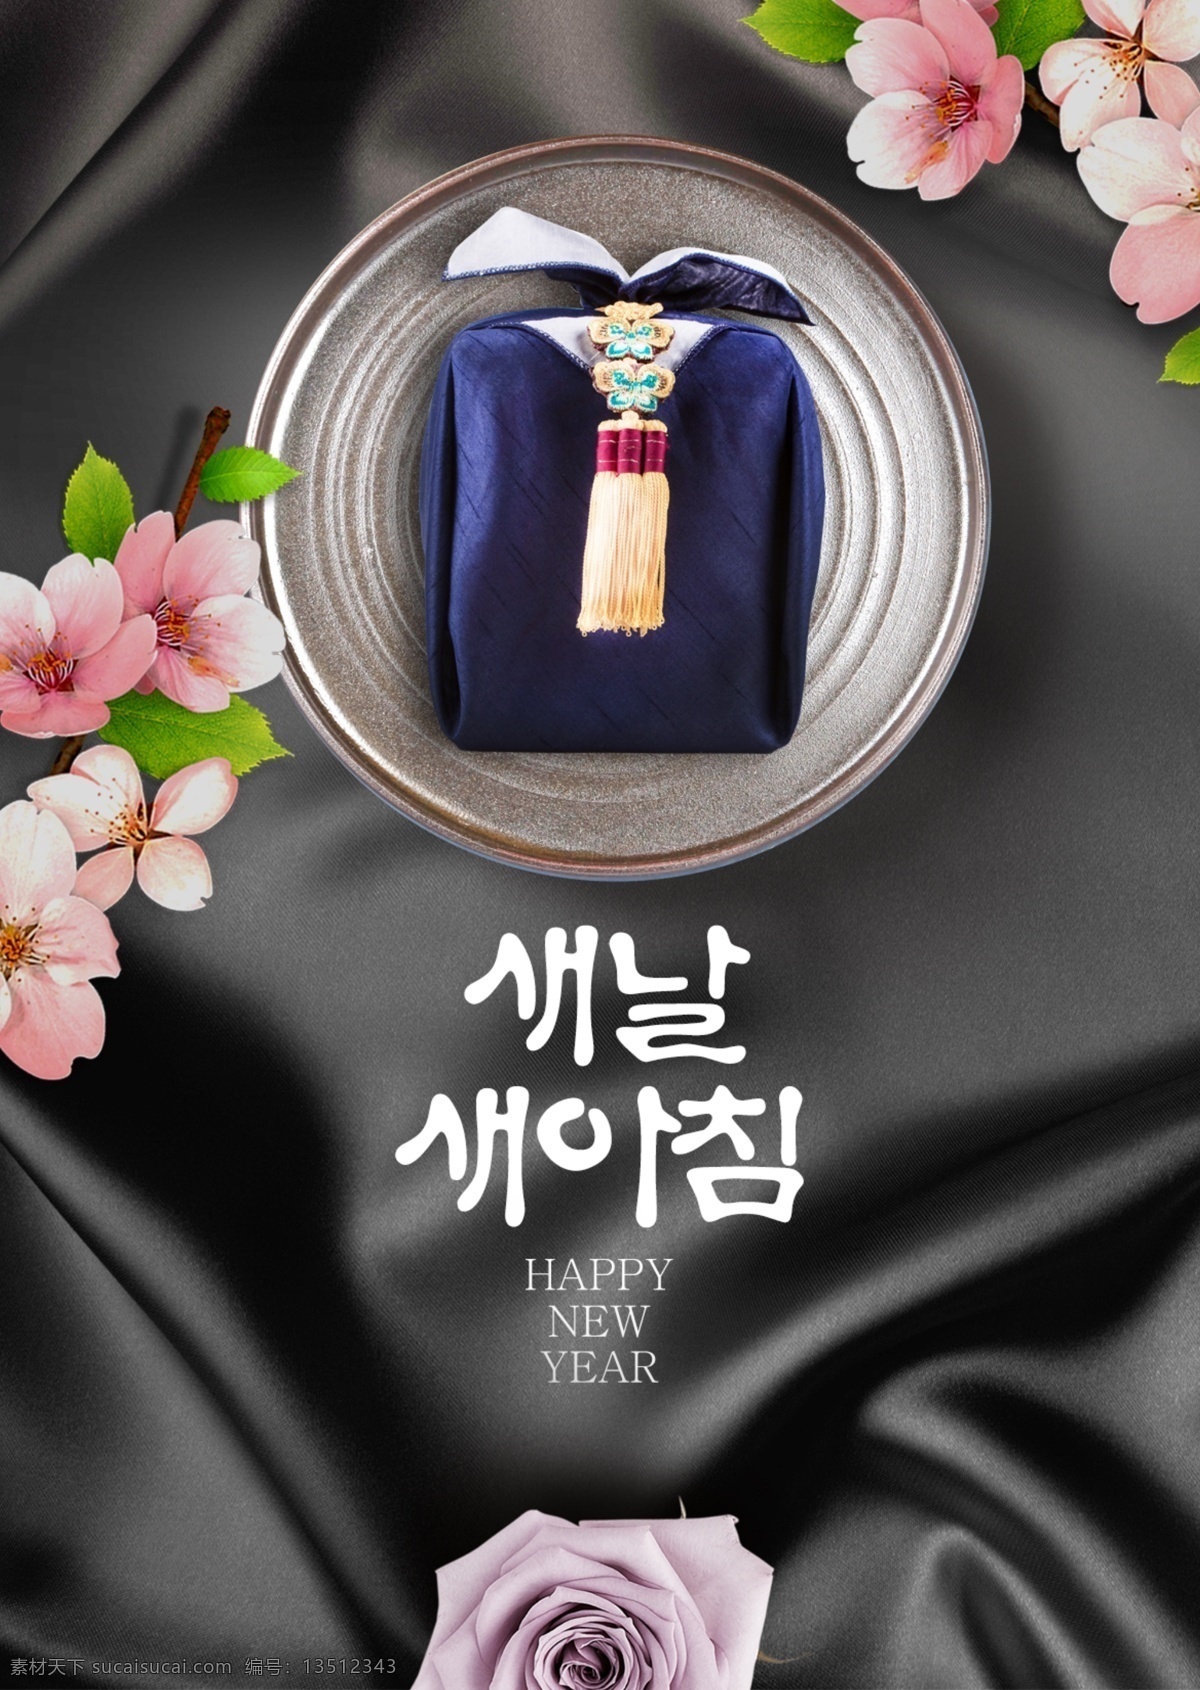 青 新 时尚 高级 韩国 传统 丝绸 宣传海报 简单 花 文化 毛笔字 绸缎 礼物 时装 海报 现代 宣传 华丽